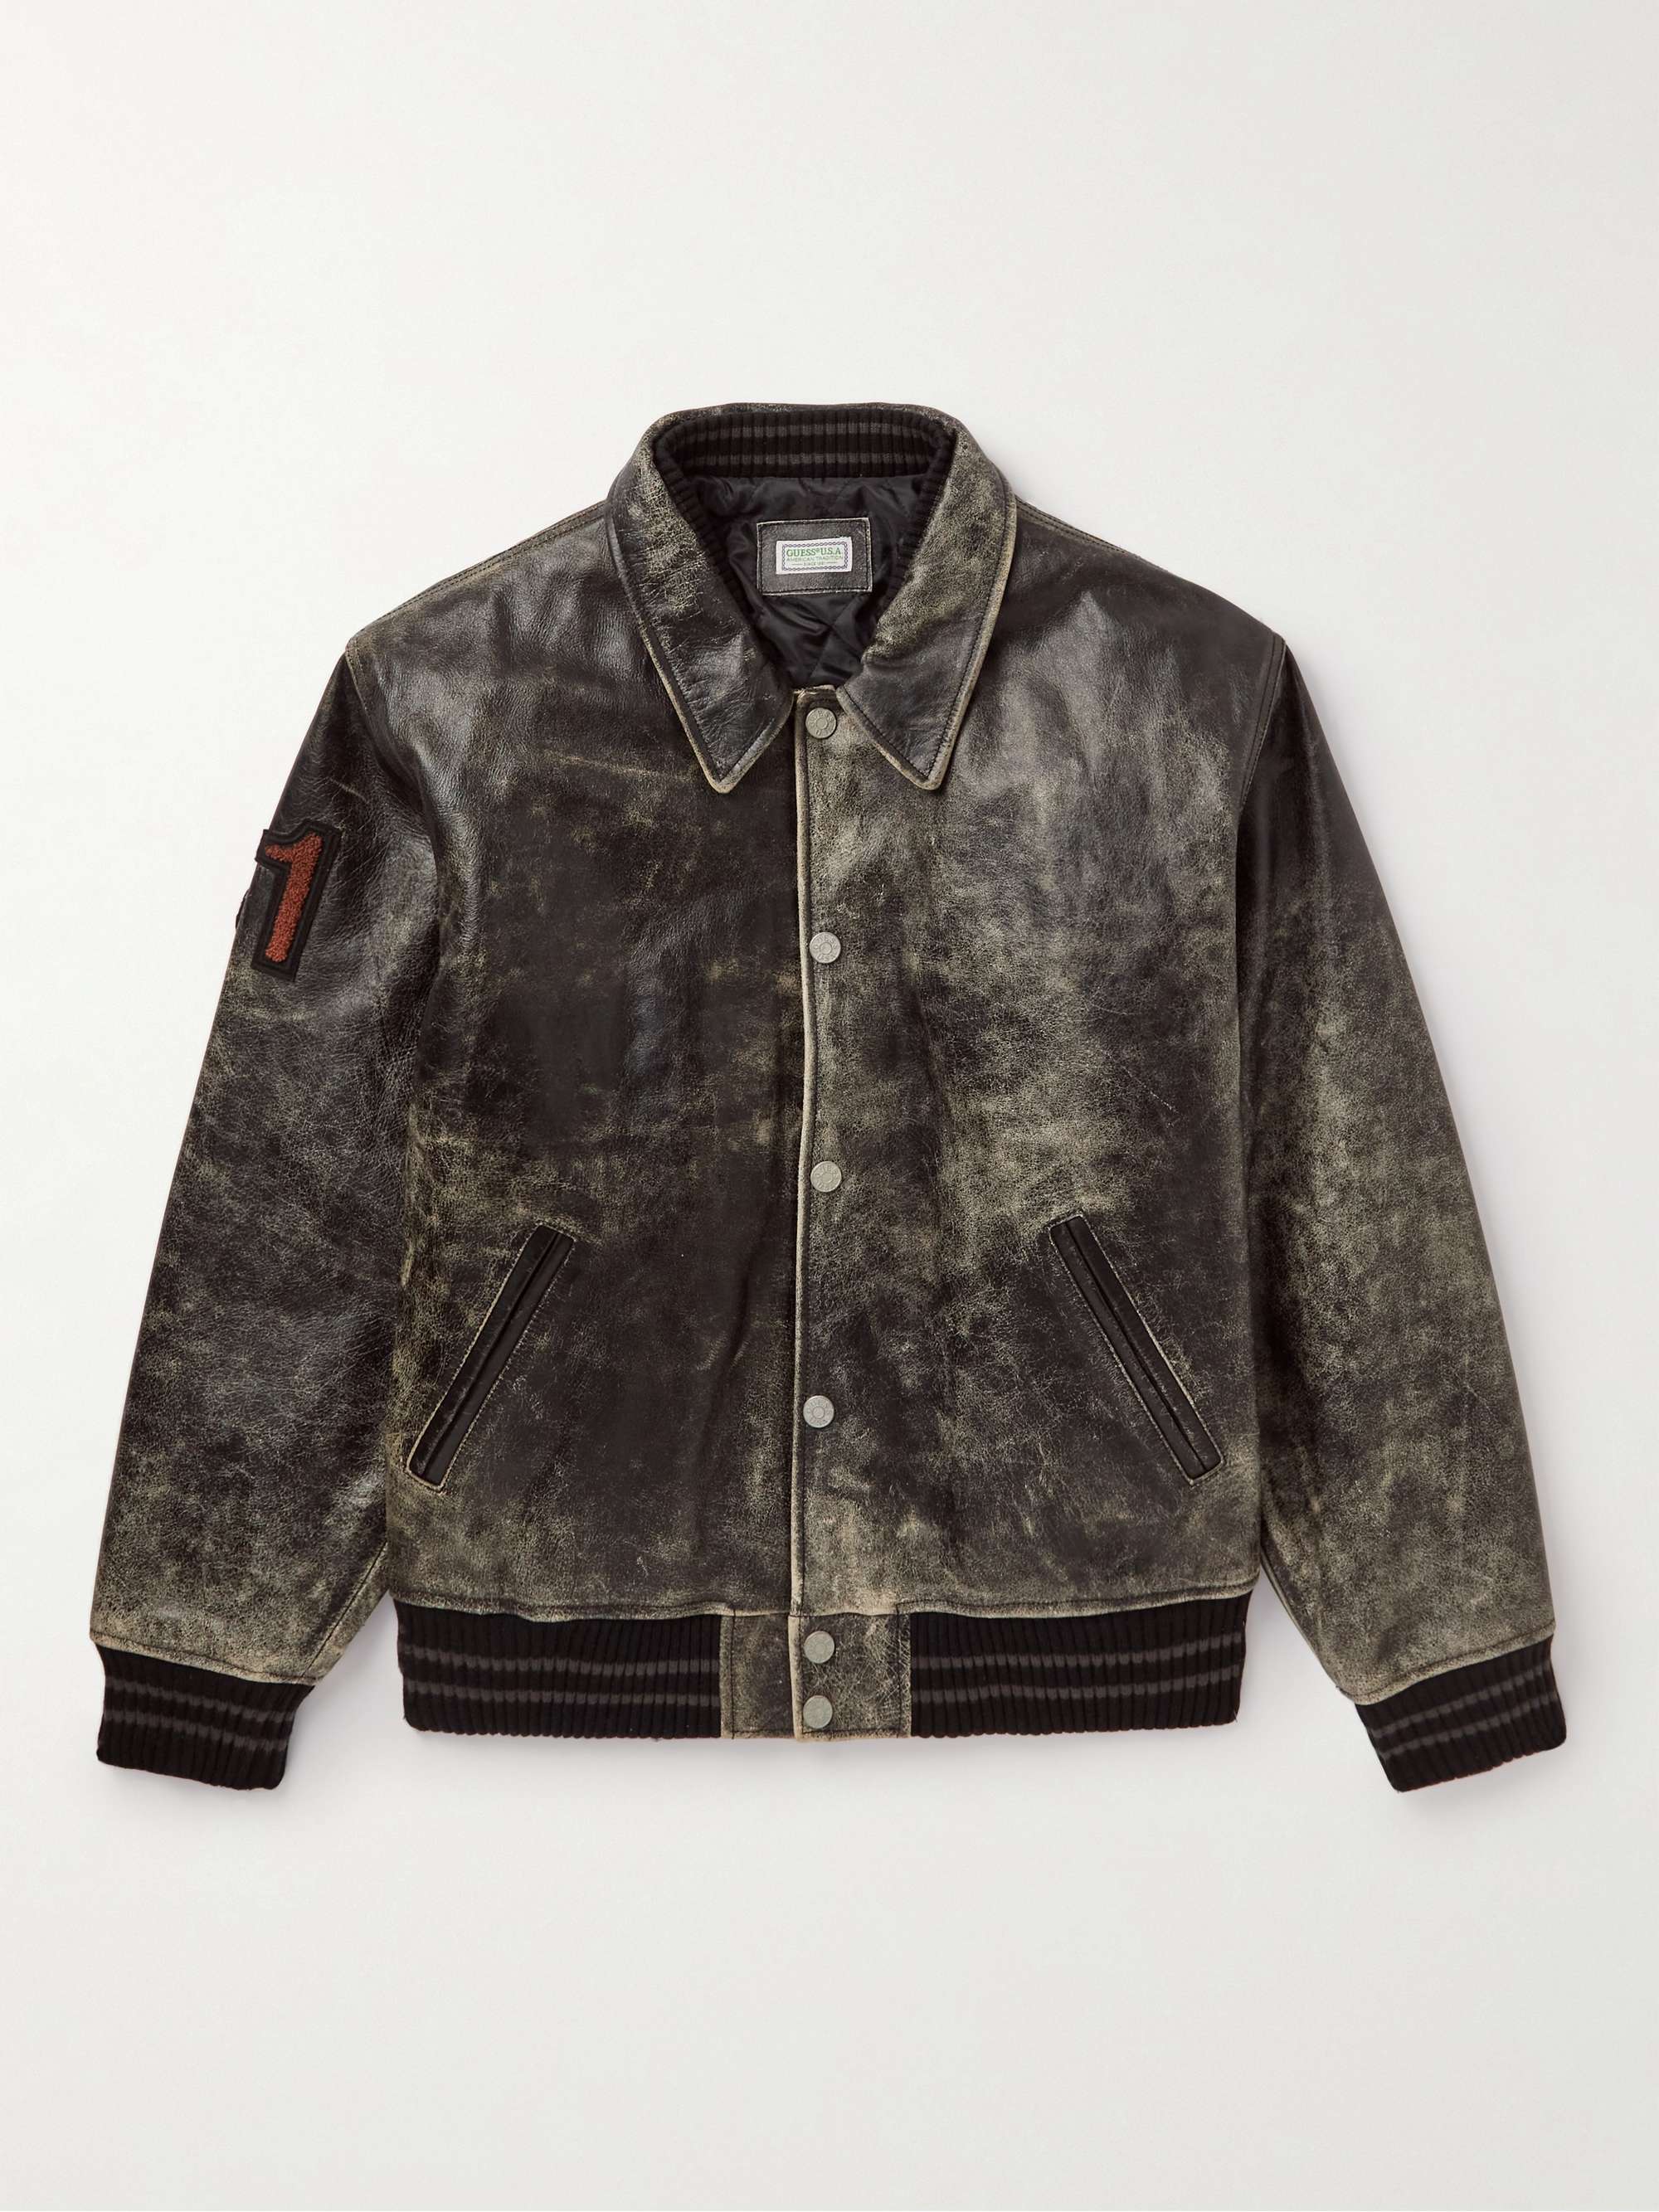 GUESS USA Appliquéd Distressed Leather Varsity Jacket | MR PORTER